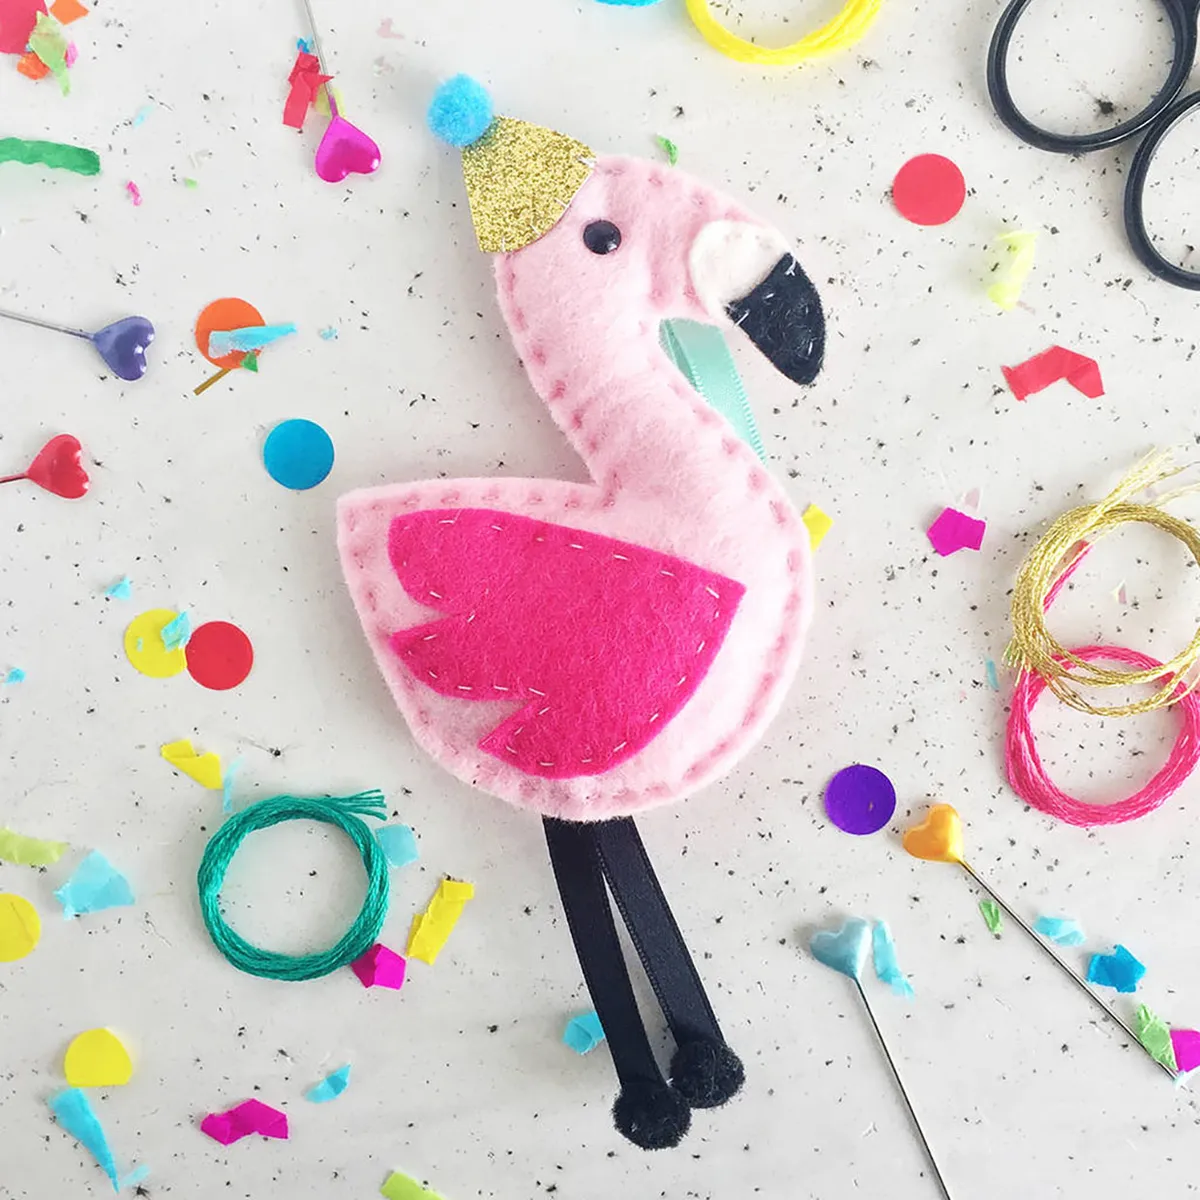 Animal patterns – flamingo toy